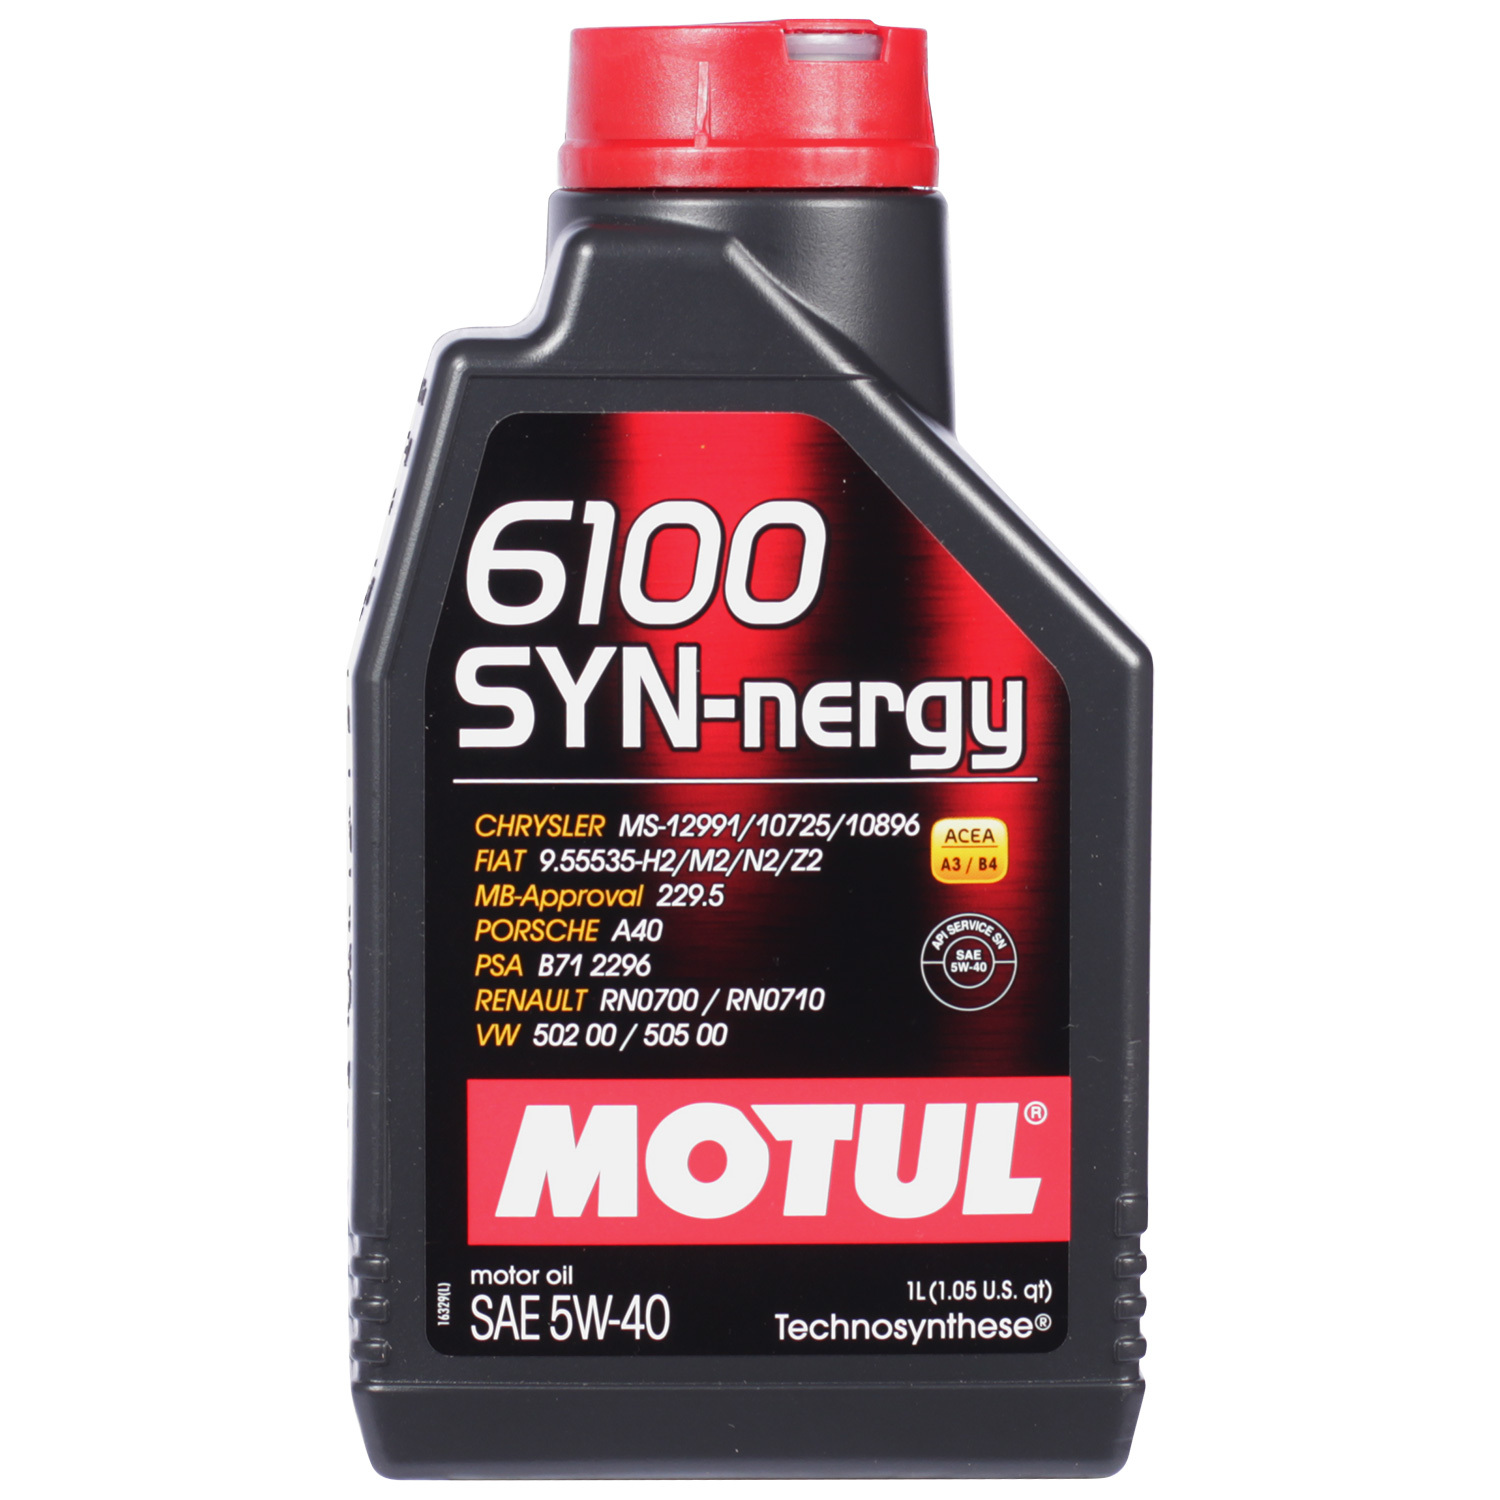 Motul Моторное масло Motul 6100 SYN-NERGY 5W-40, 1 л motul моторное масло motul 8100 eco nergy 5w 30 5 л